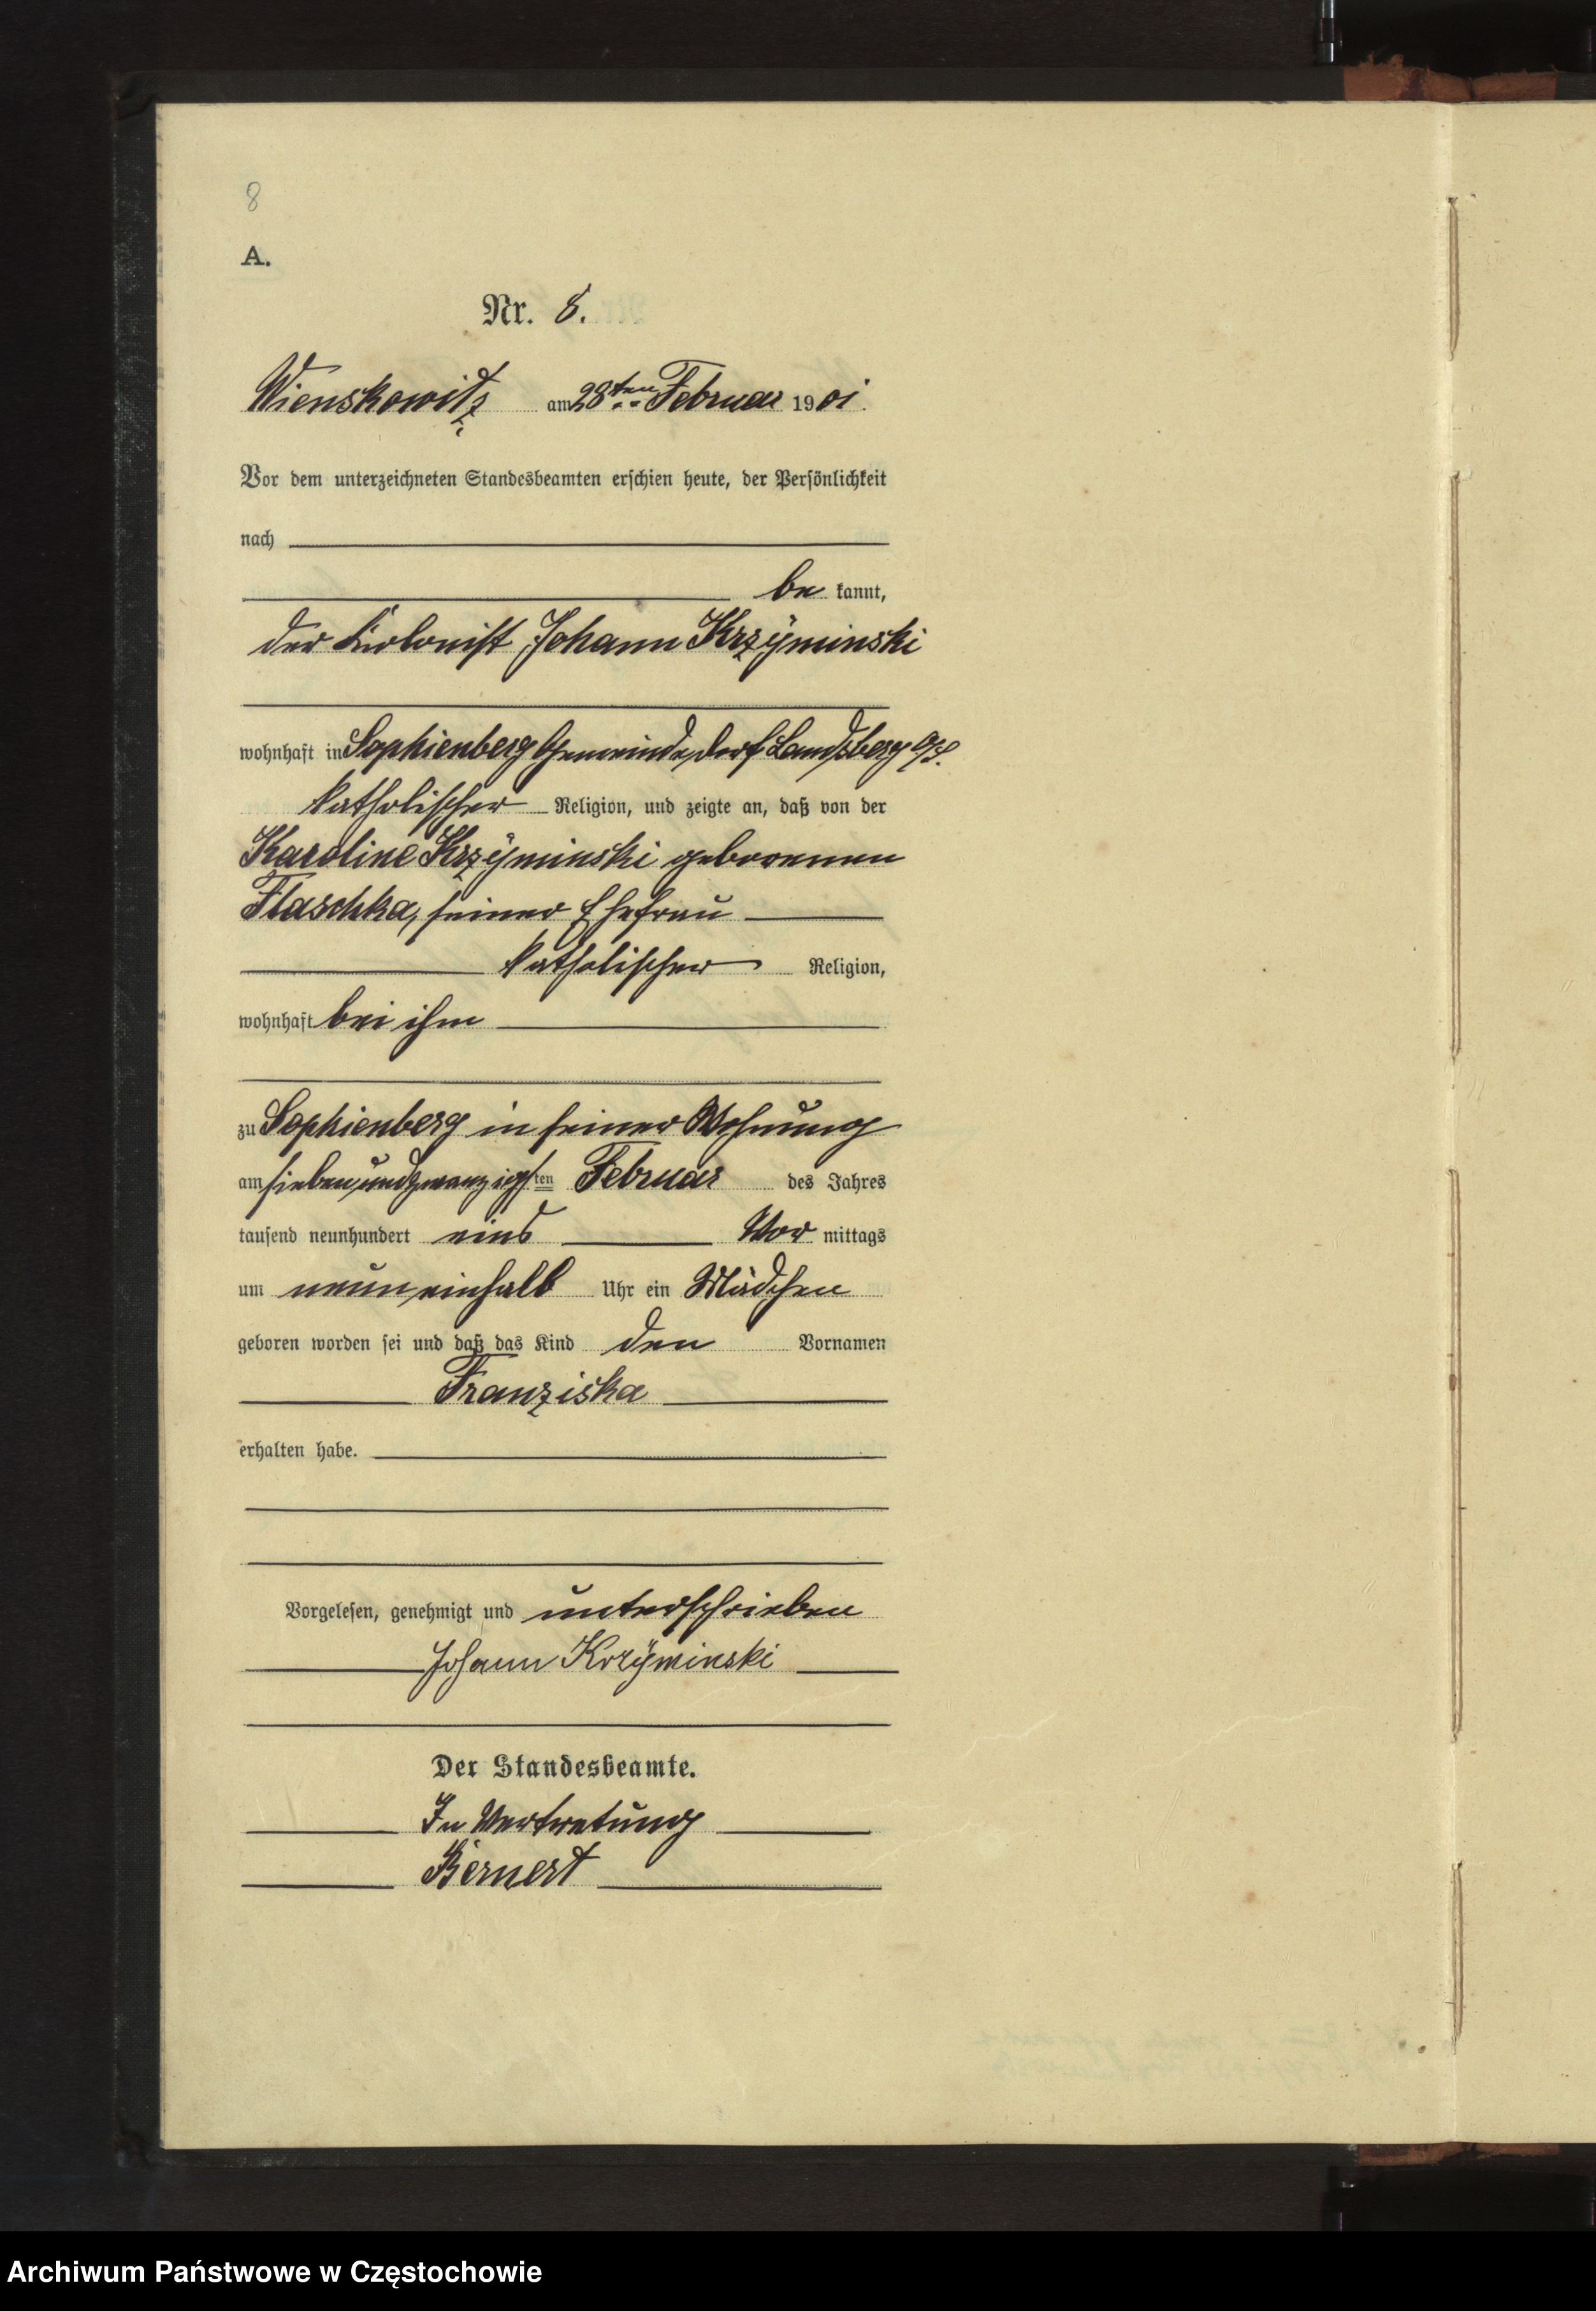 Skan z jednostki: Geburts - Haupt - Register des Koniglich Preussiechen Standesamts Wienskowitz  im Kreise Rosenberg o/ S. pro 1901.